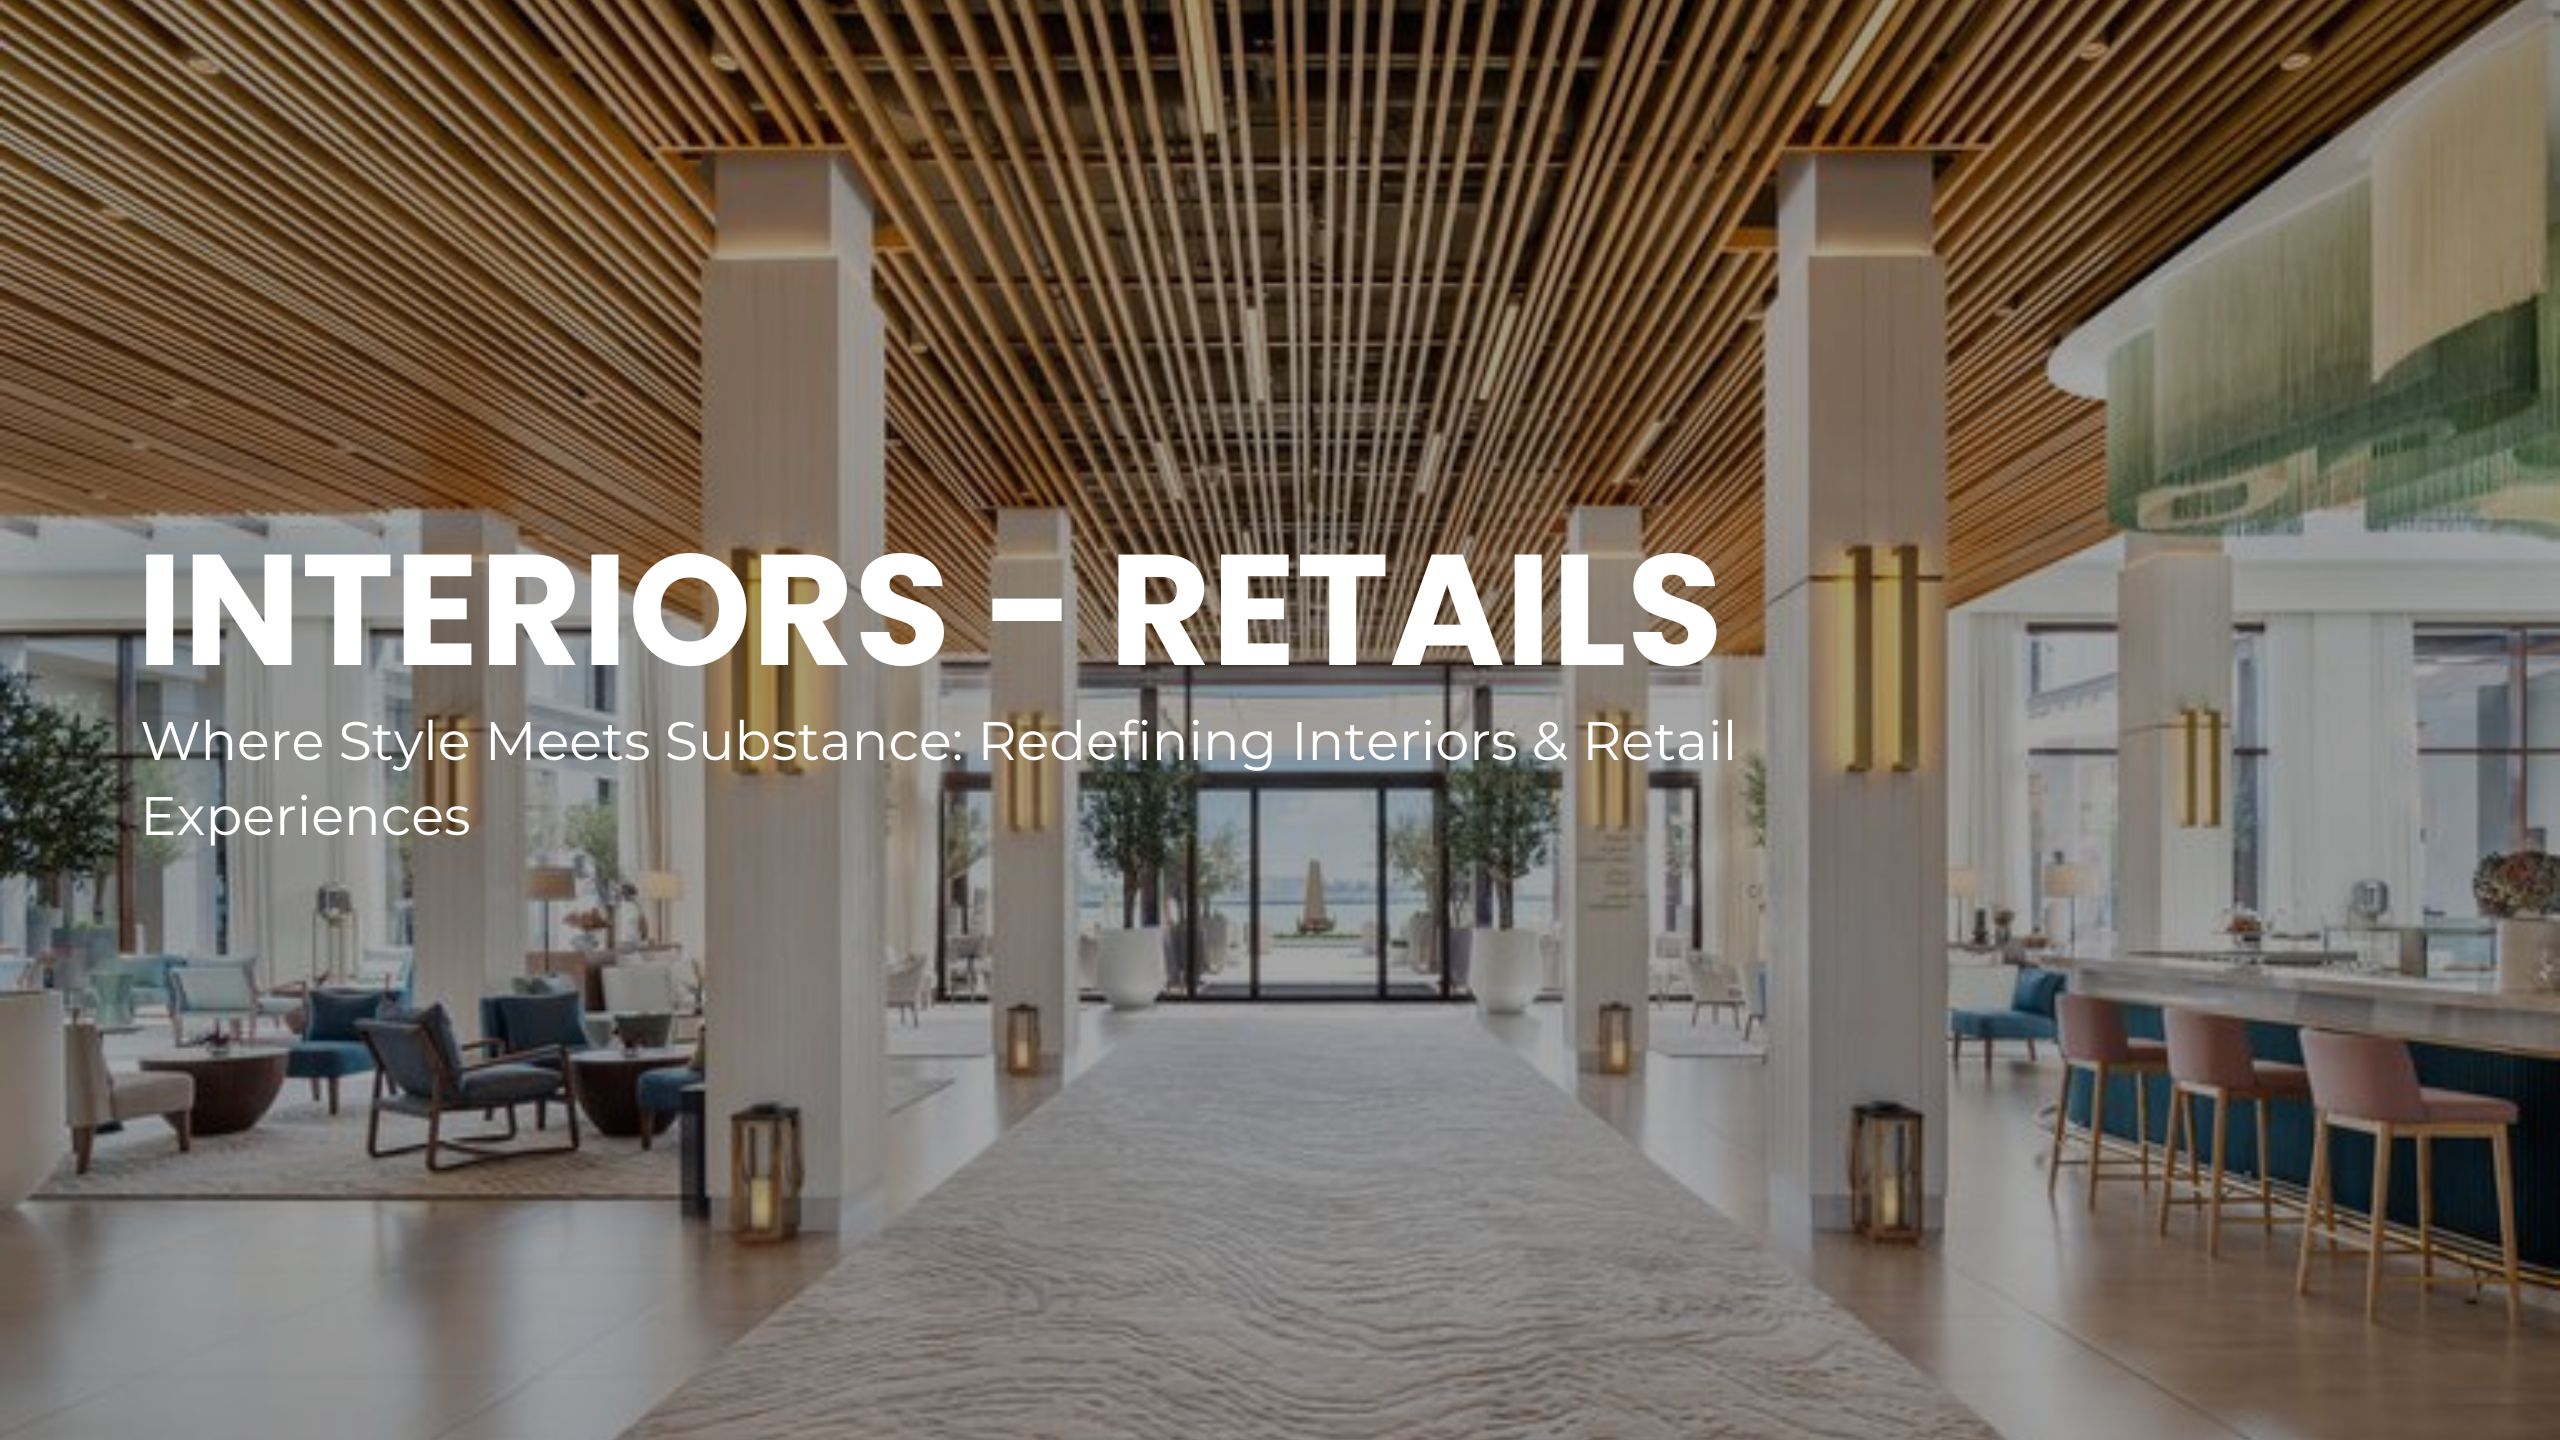 Interiors - Retails (1)